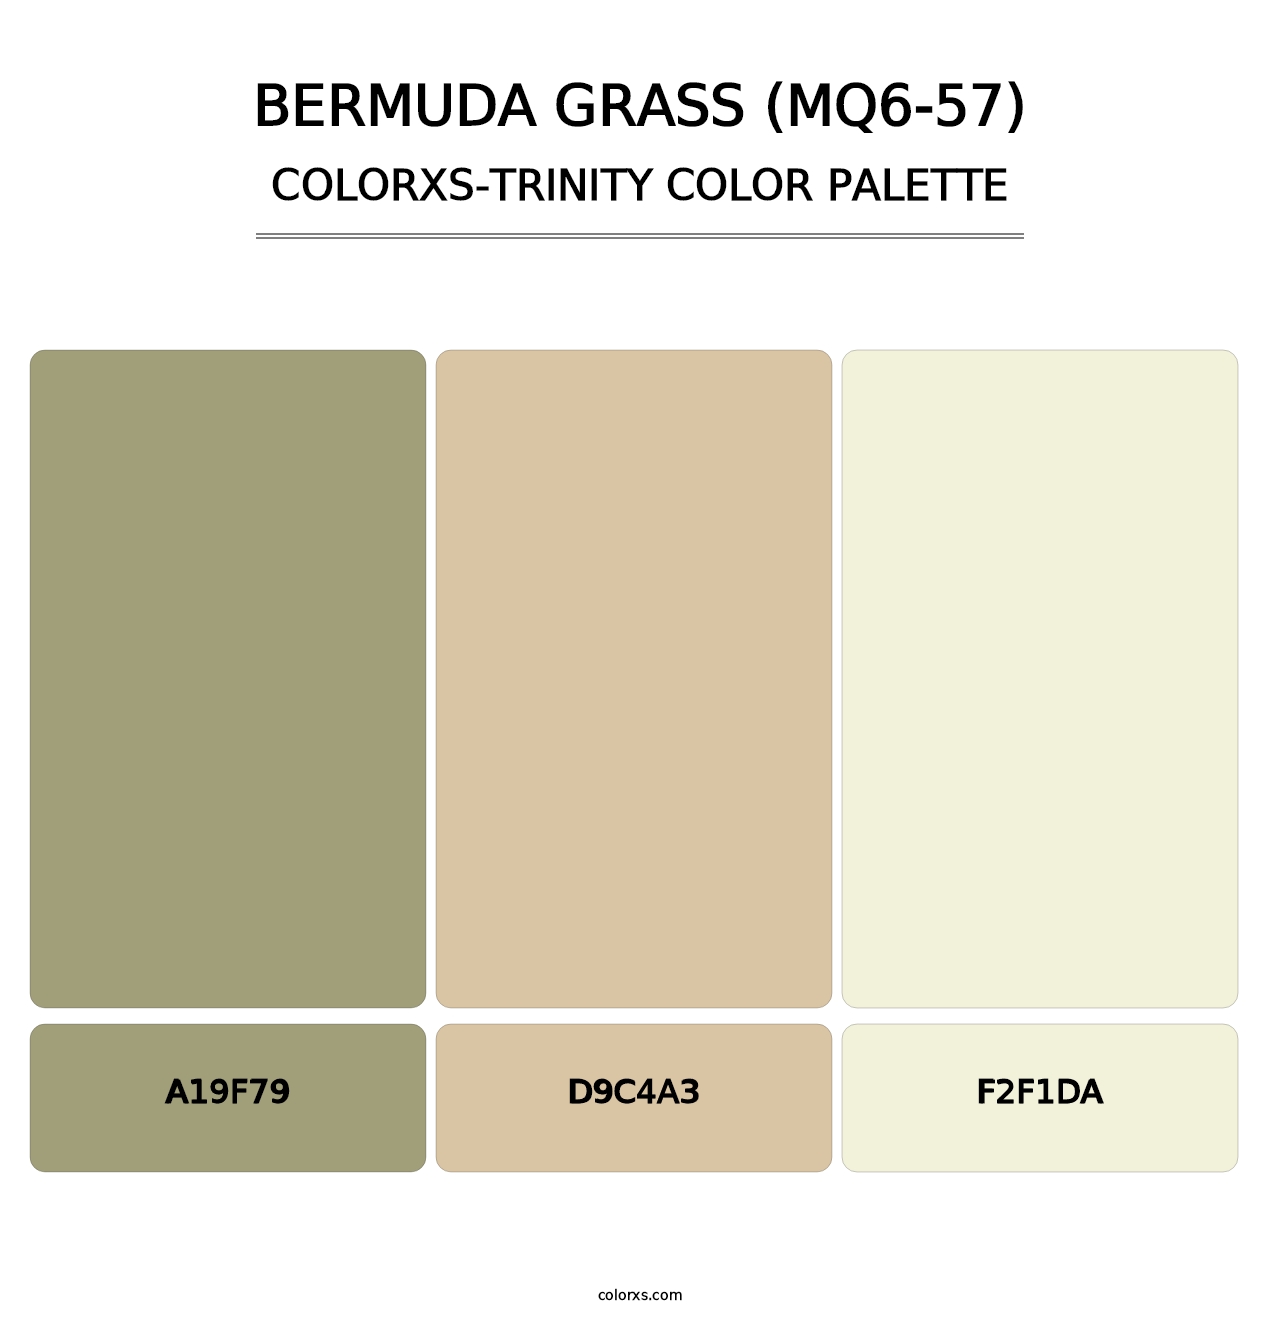 Bermuda Grass (MQ6-57) - Colorxs Trinity Palette